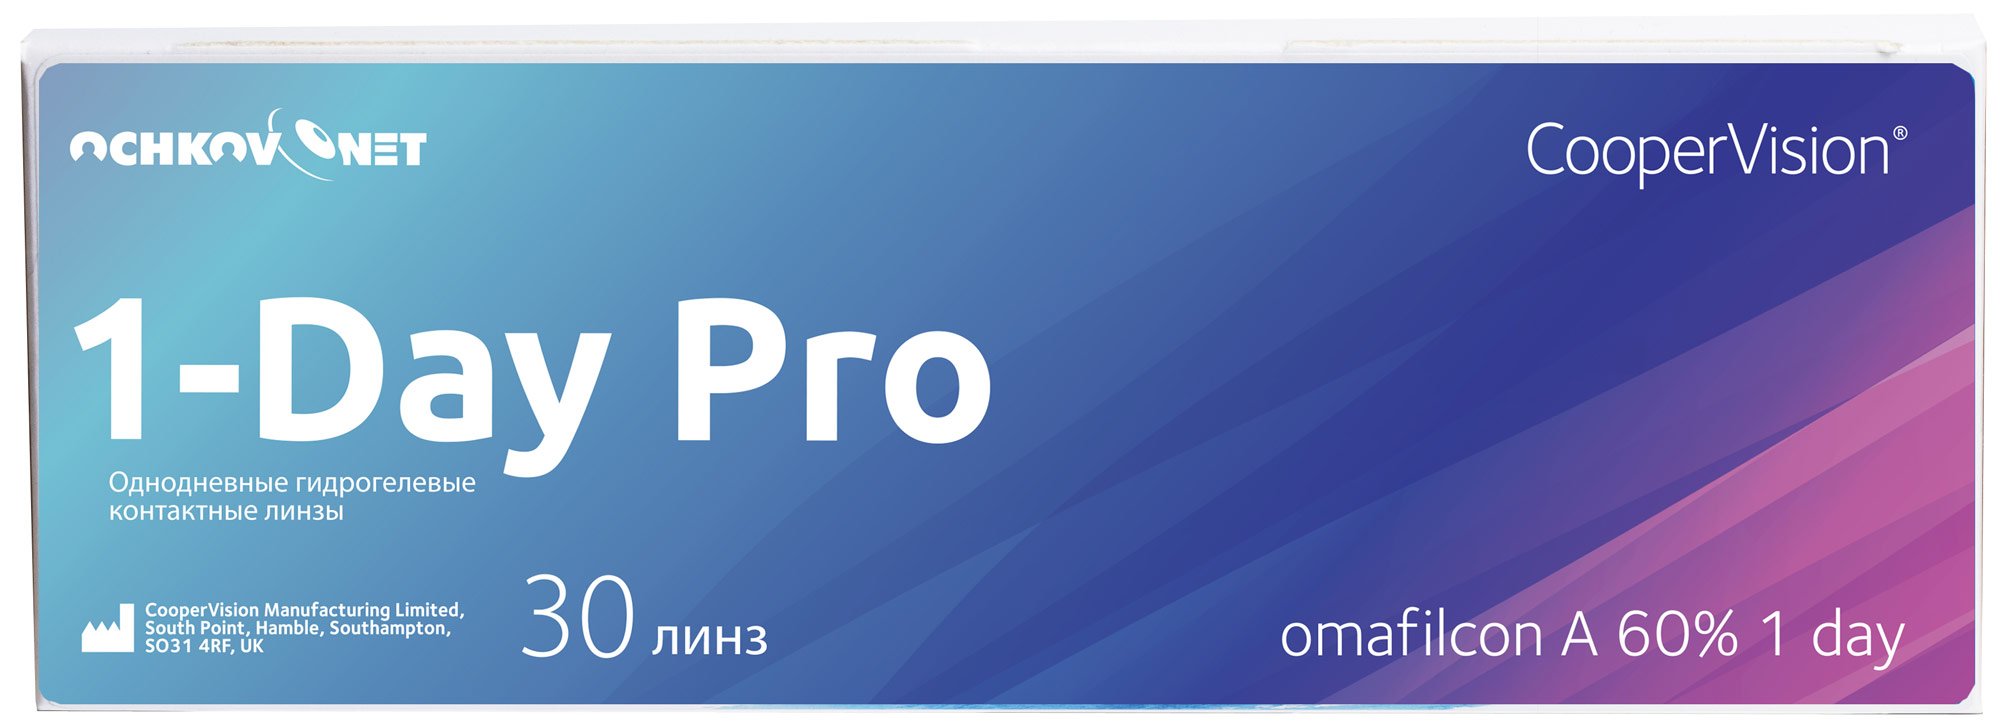 Купить Контактные линзы Ochkov.Net 1-Day Pro 30 линз 8.7, -10.5